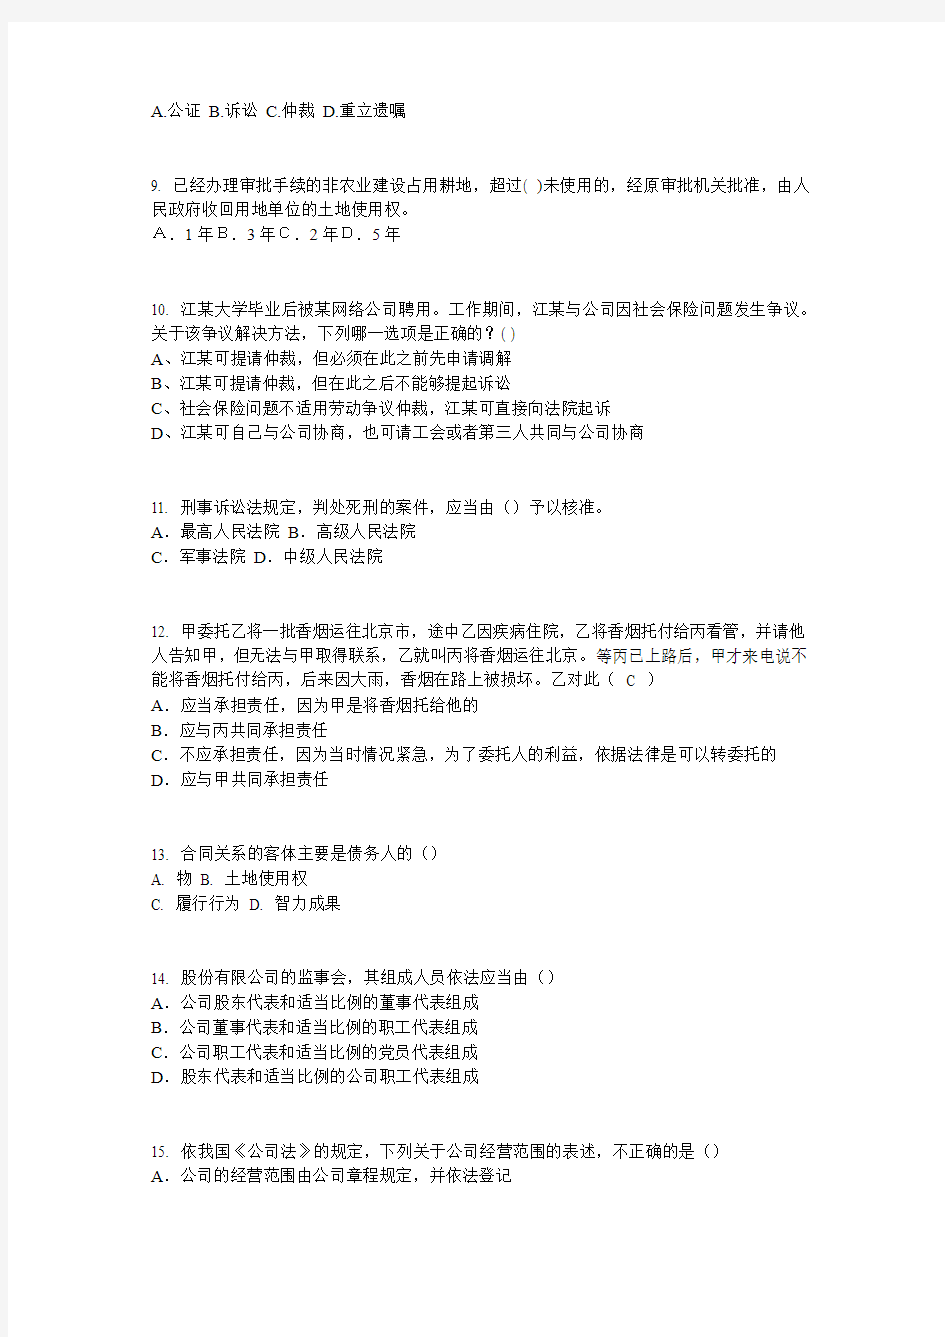 重庆省2016年下半年企业法律顾问执业资格考试考试题